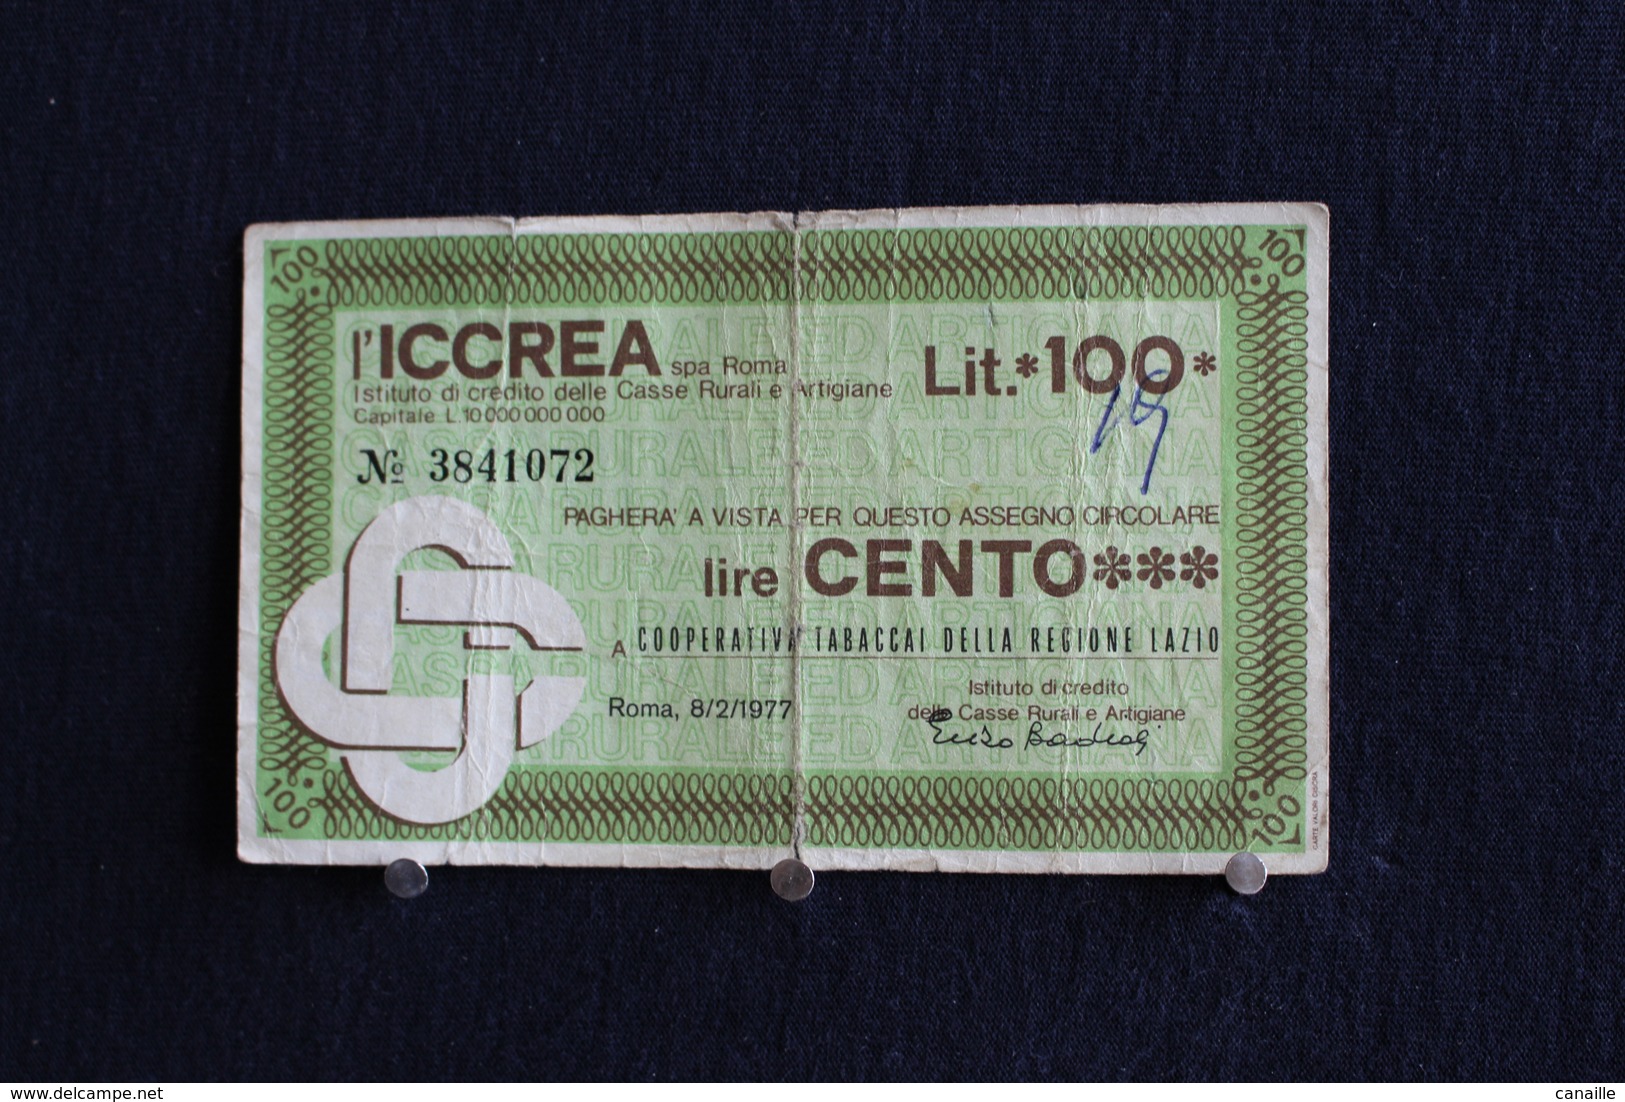 5 / Italie / 1946: Royaume / Biglietti - L'Iccrea, Spa Roma, 8/2/77 - 100 Lire - Cento Lire - 100 Lire